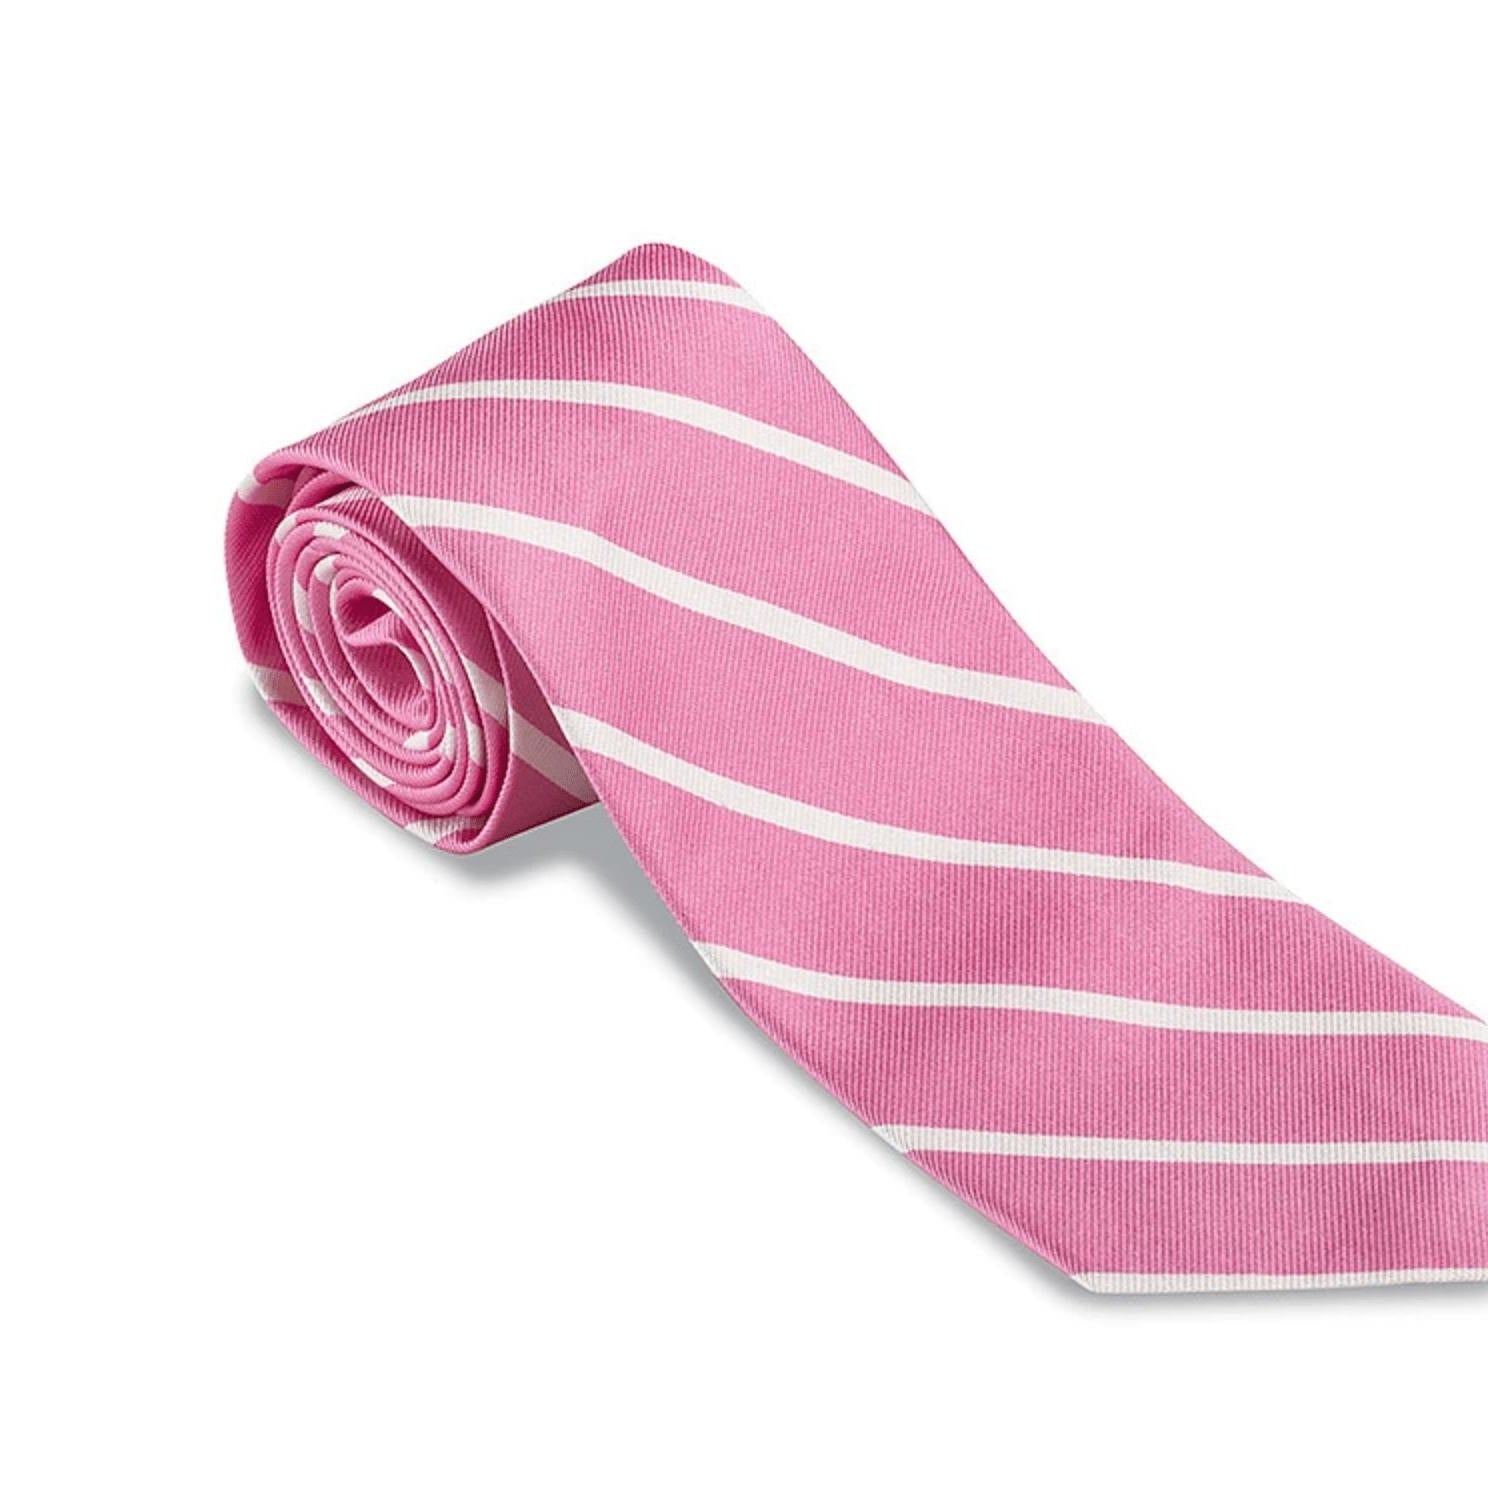 R. Hanauer Men's Necktie Pink Buckingham Stripe Necktie